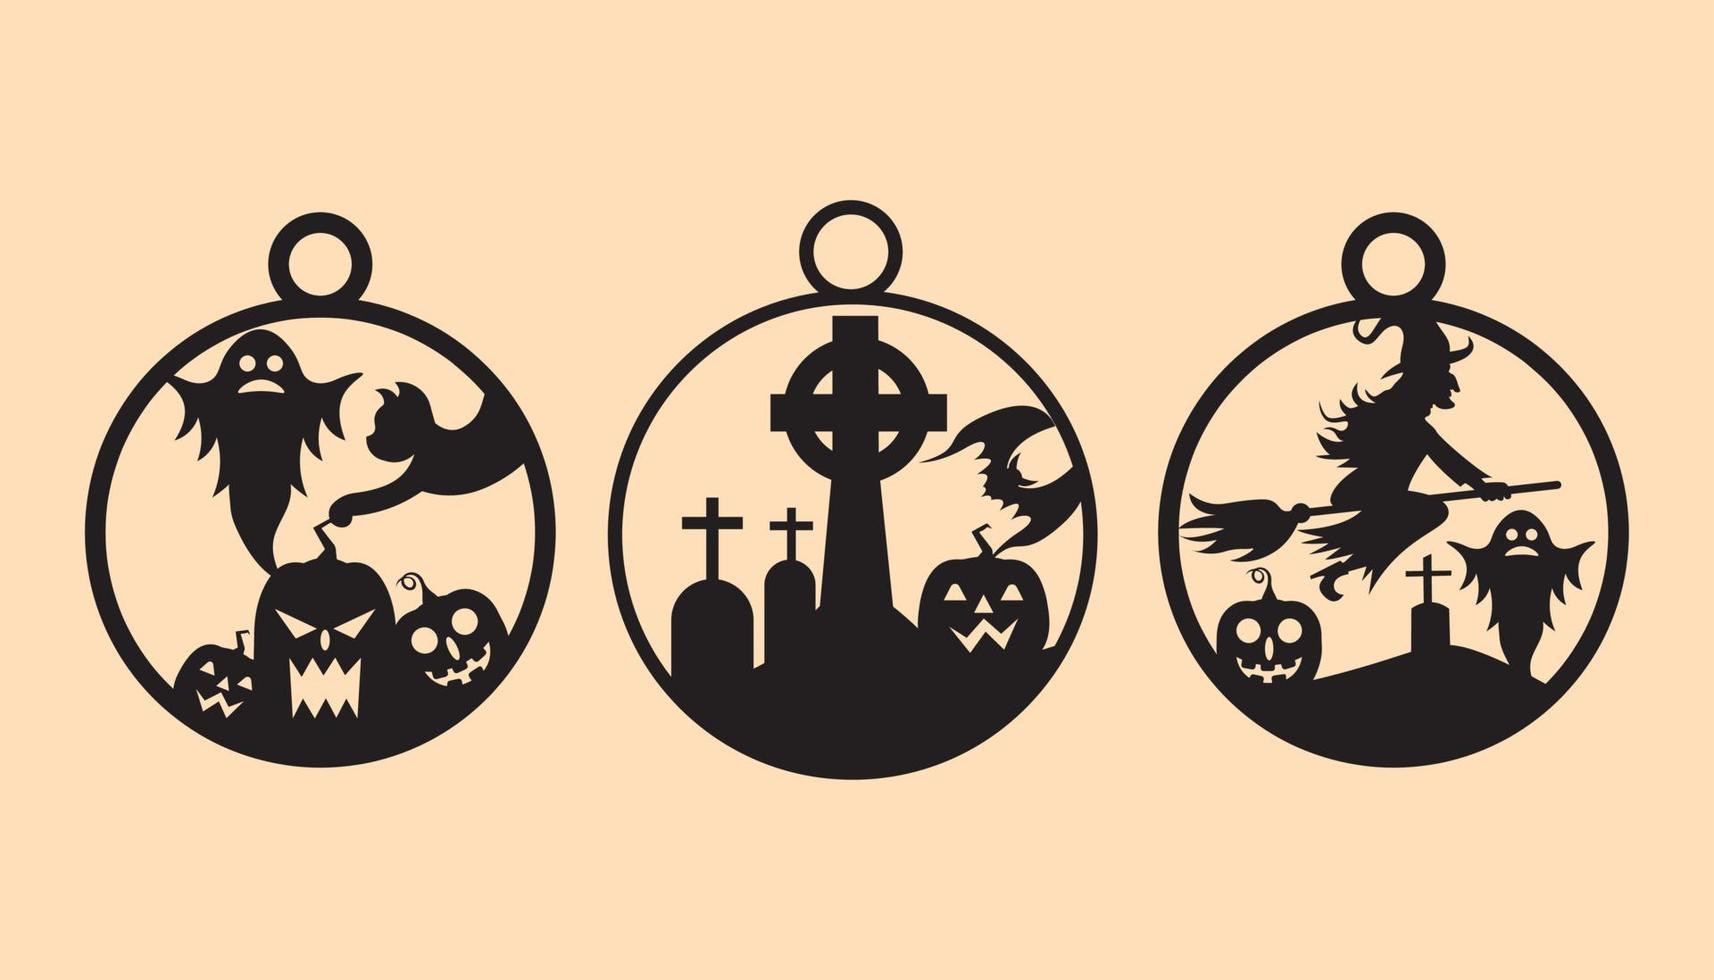 conjunto de vectores de elementos de adornos de halloween